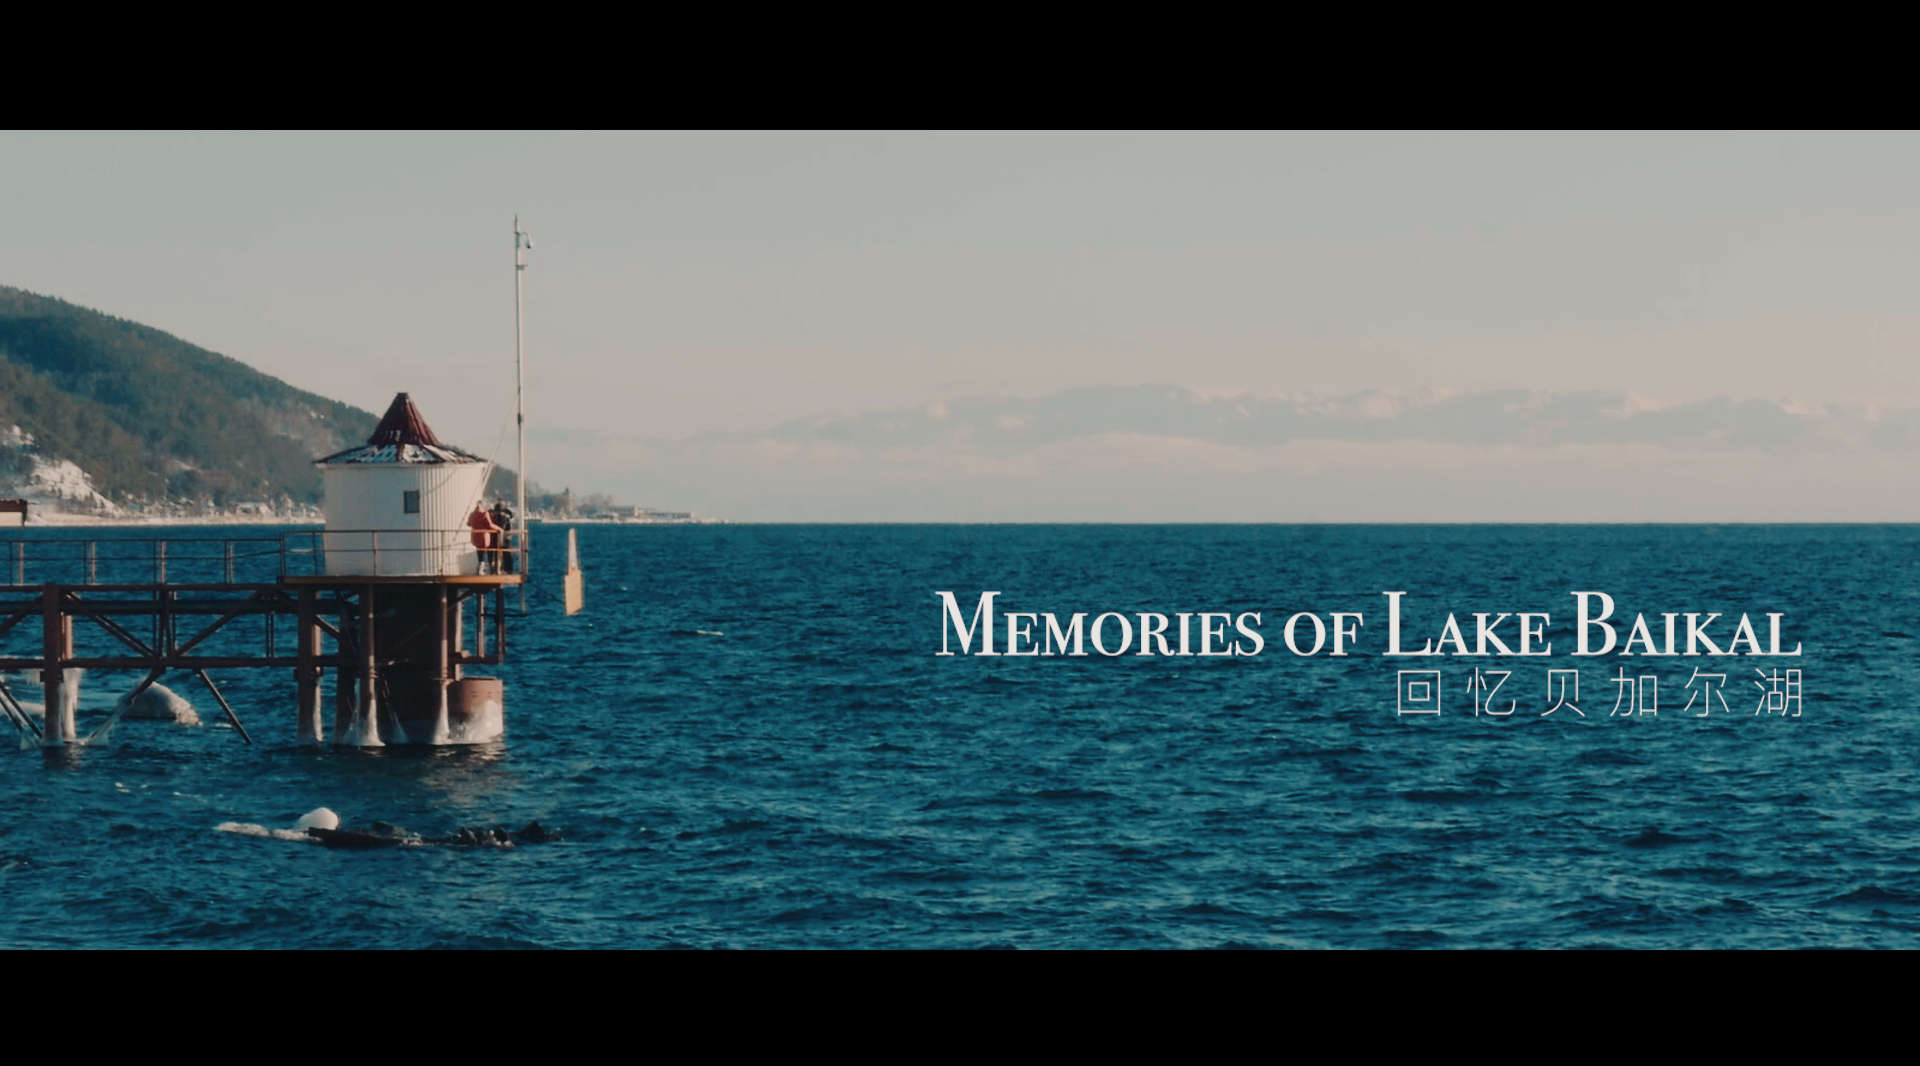 暖心旅行纪录短片《回忆贝加尔湖》